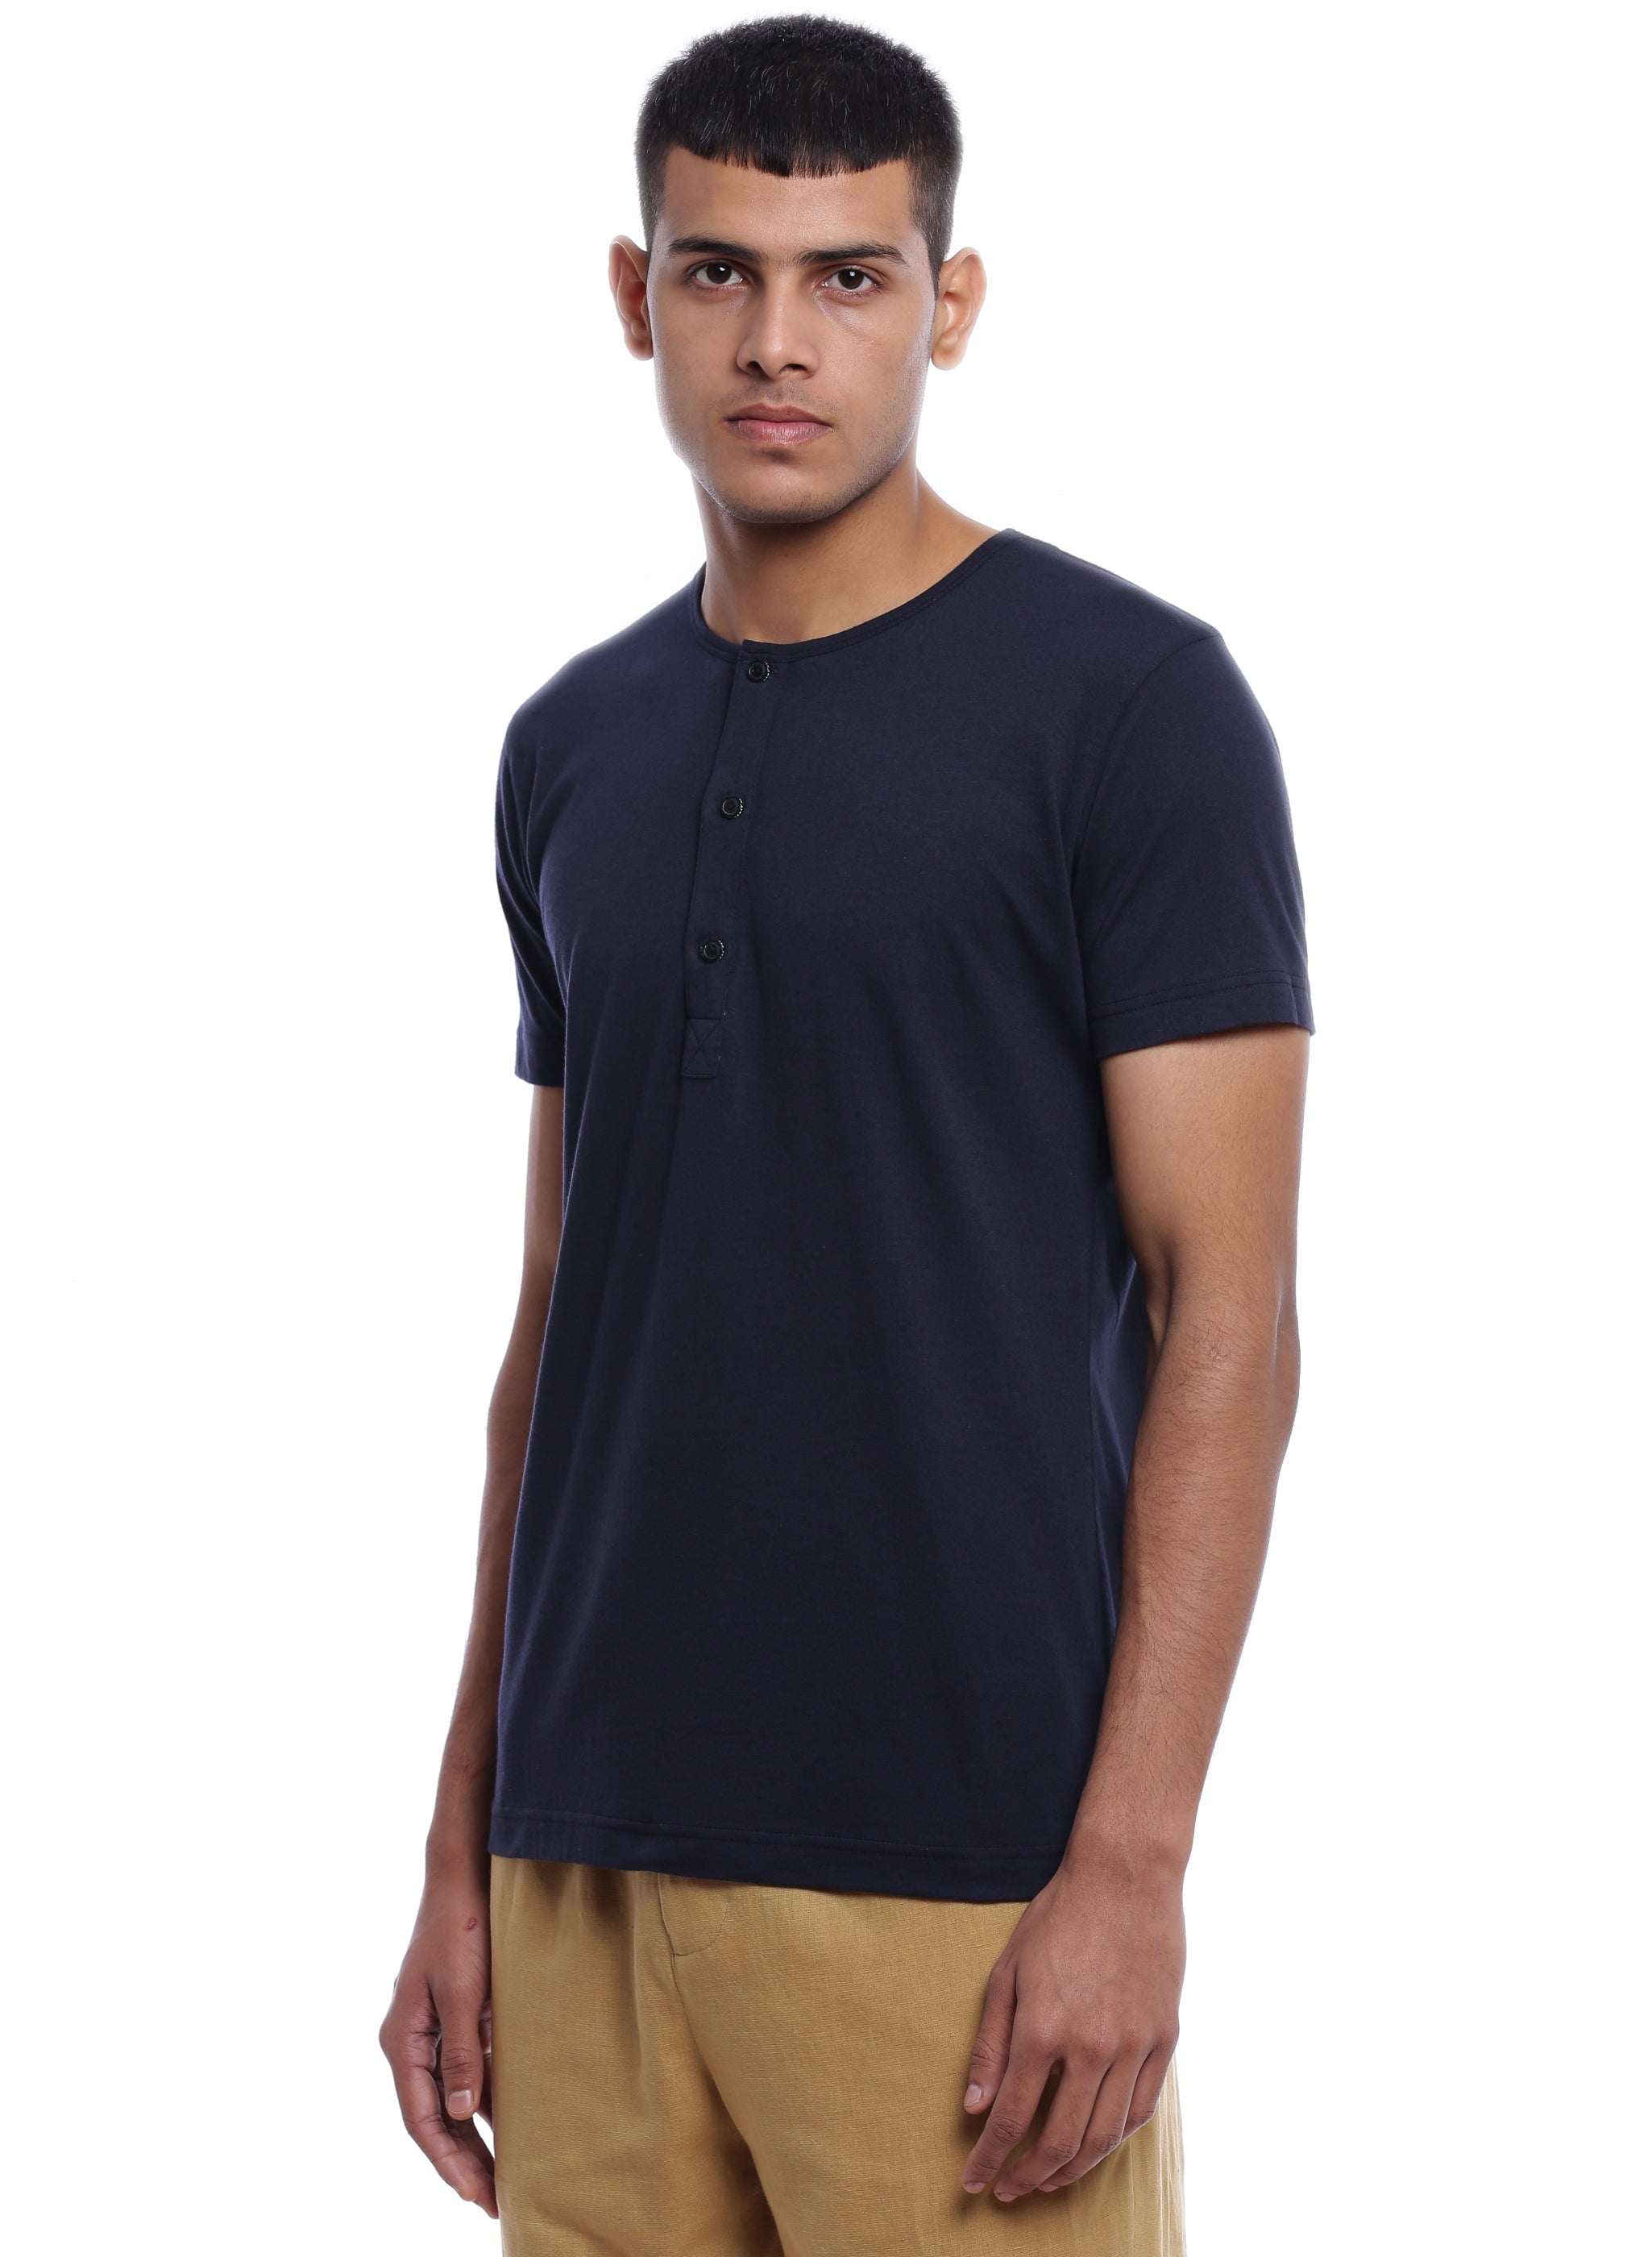 Blue Cotton Buttoned T-shirt - Genes online store 2020